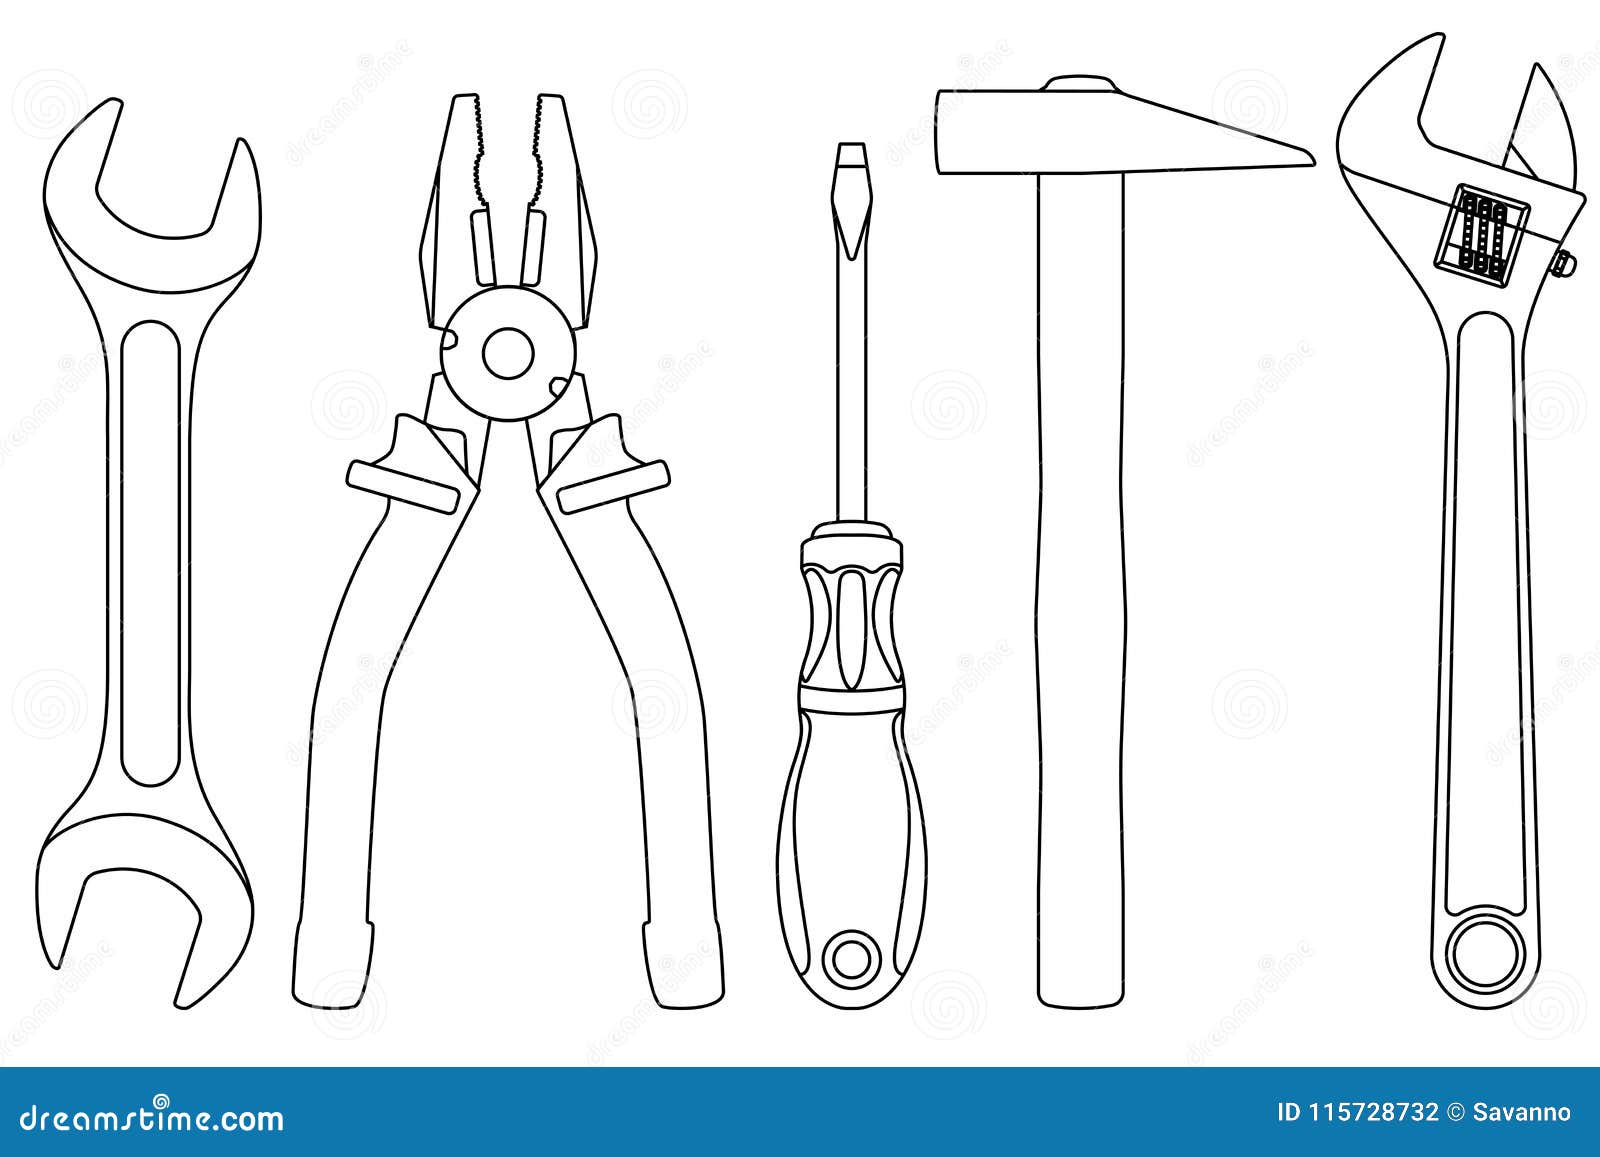 Промышленный набор инструментов - гаечный ключ, плоскогубцы, отвертка .